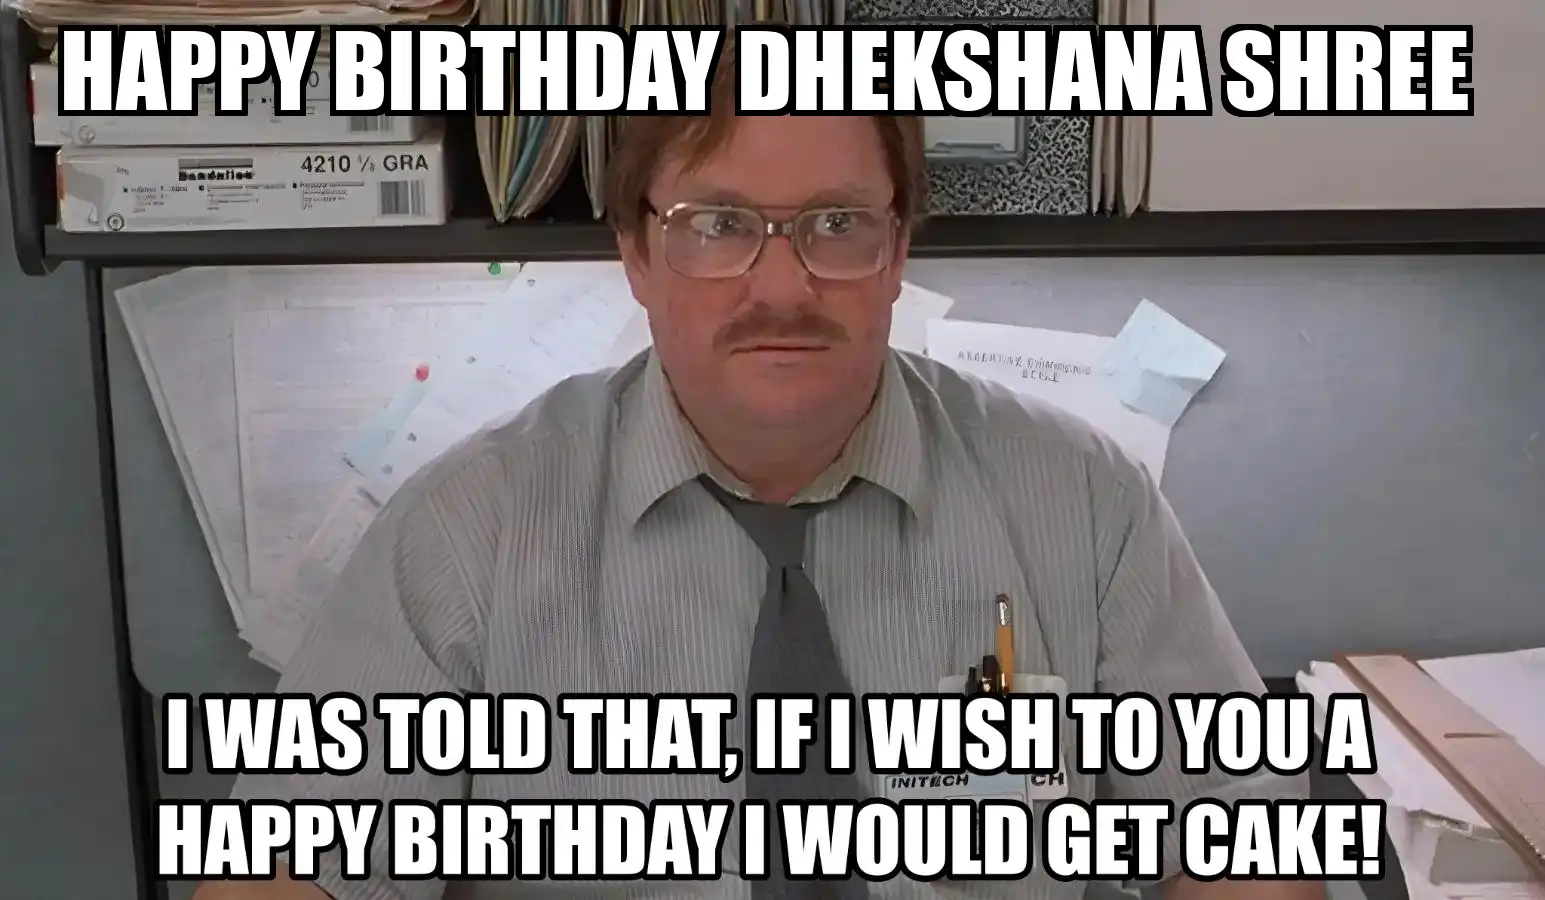 Happy Birthday Dhekshana shree I Would Get A Cake Meme